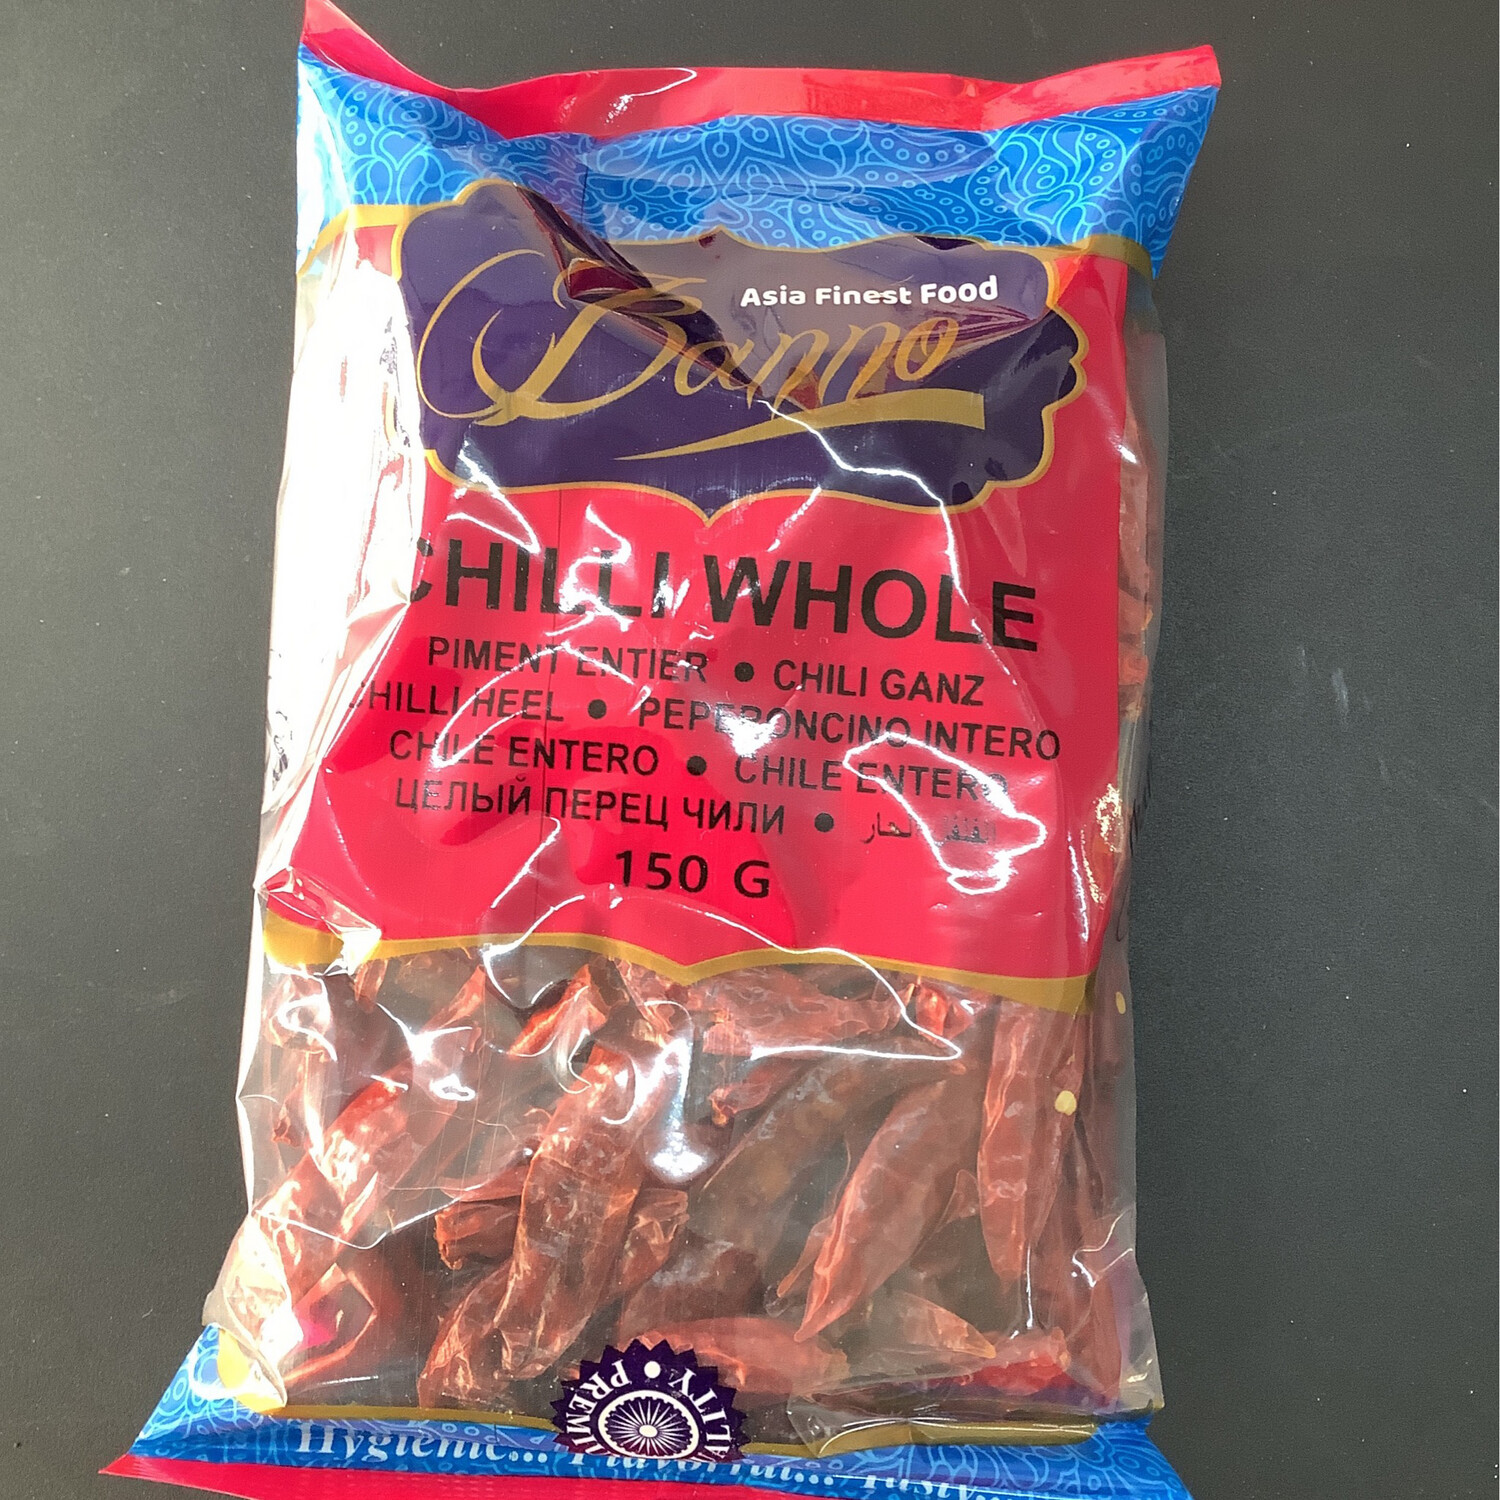 Banno Chili Whole 150g